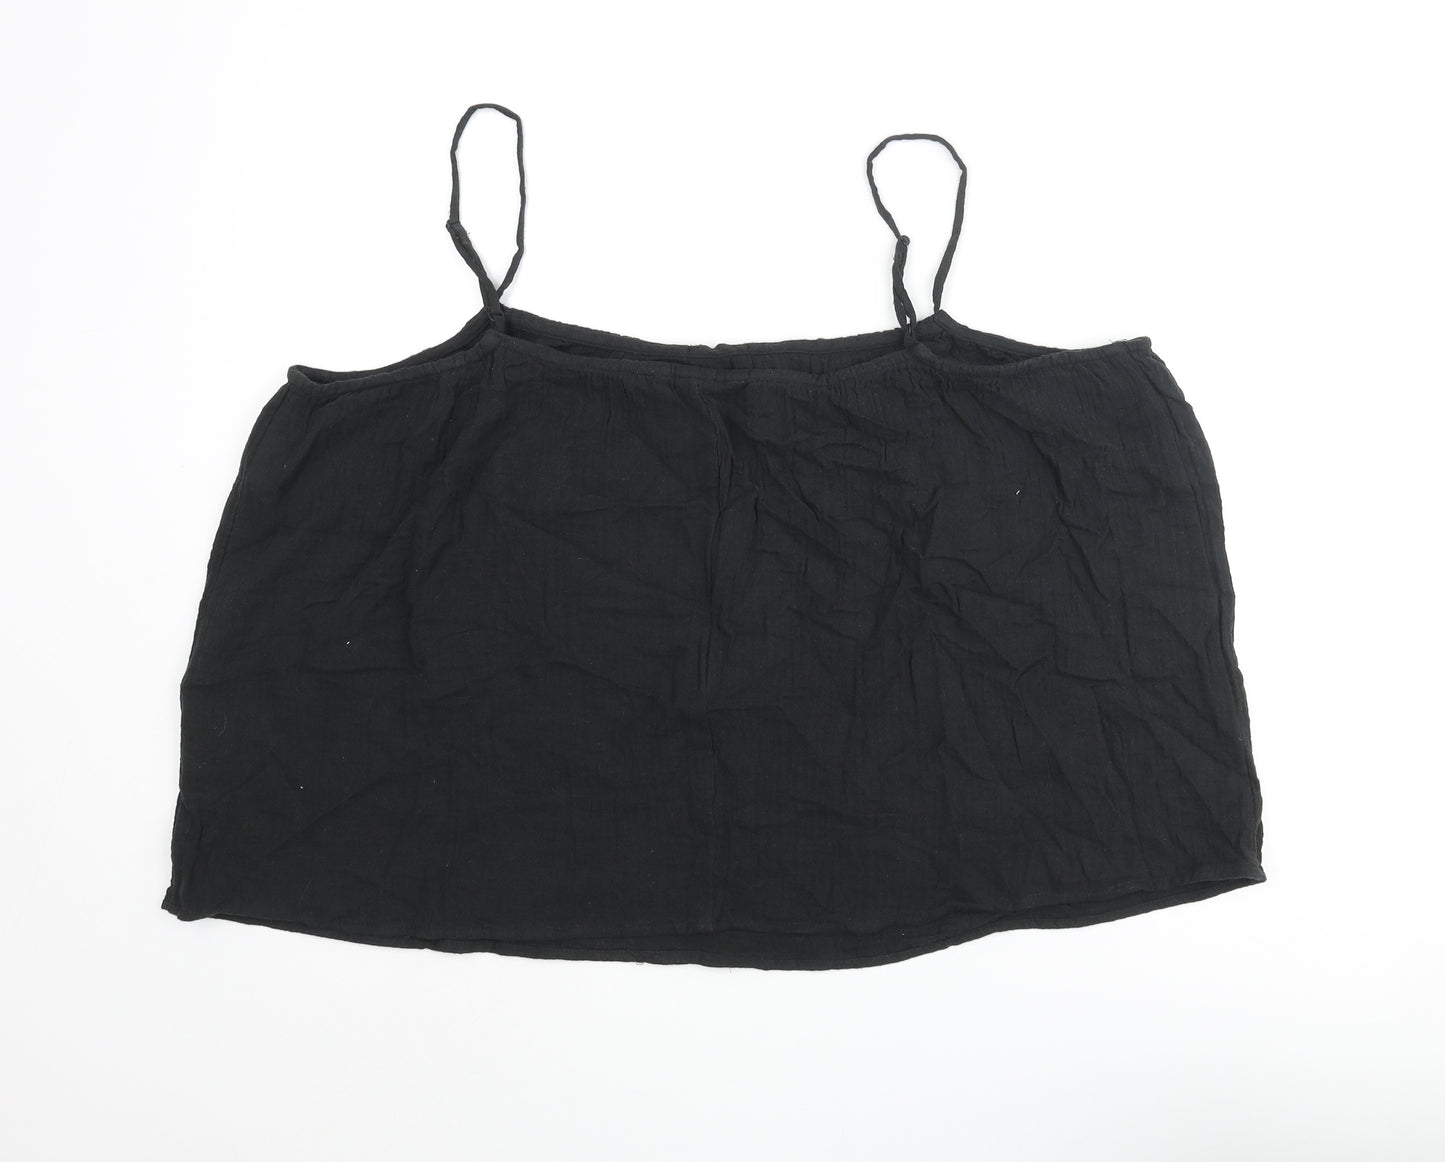 H&M Womens Black Cotton Camisole Blouse Size L Scoop Neck - Bow